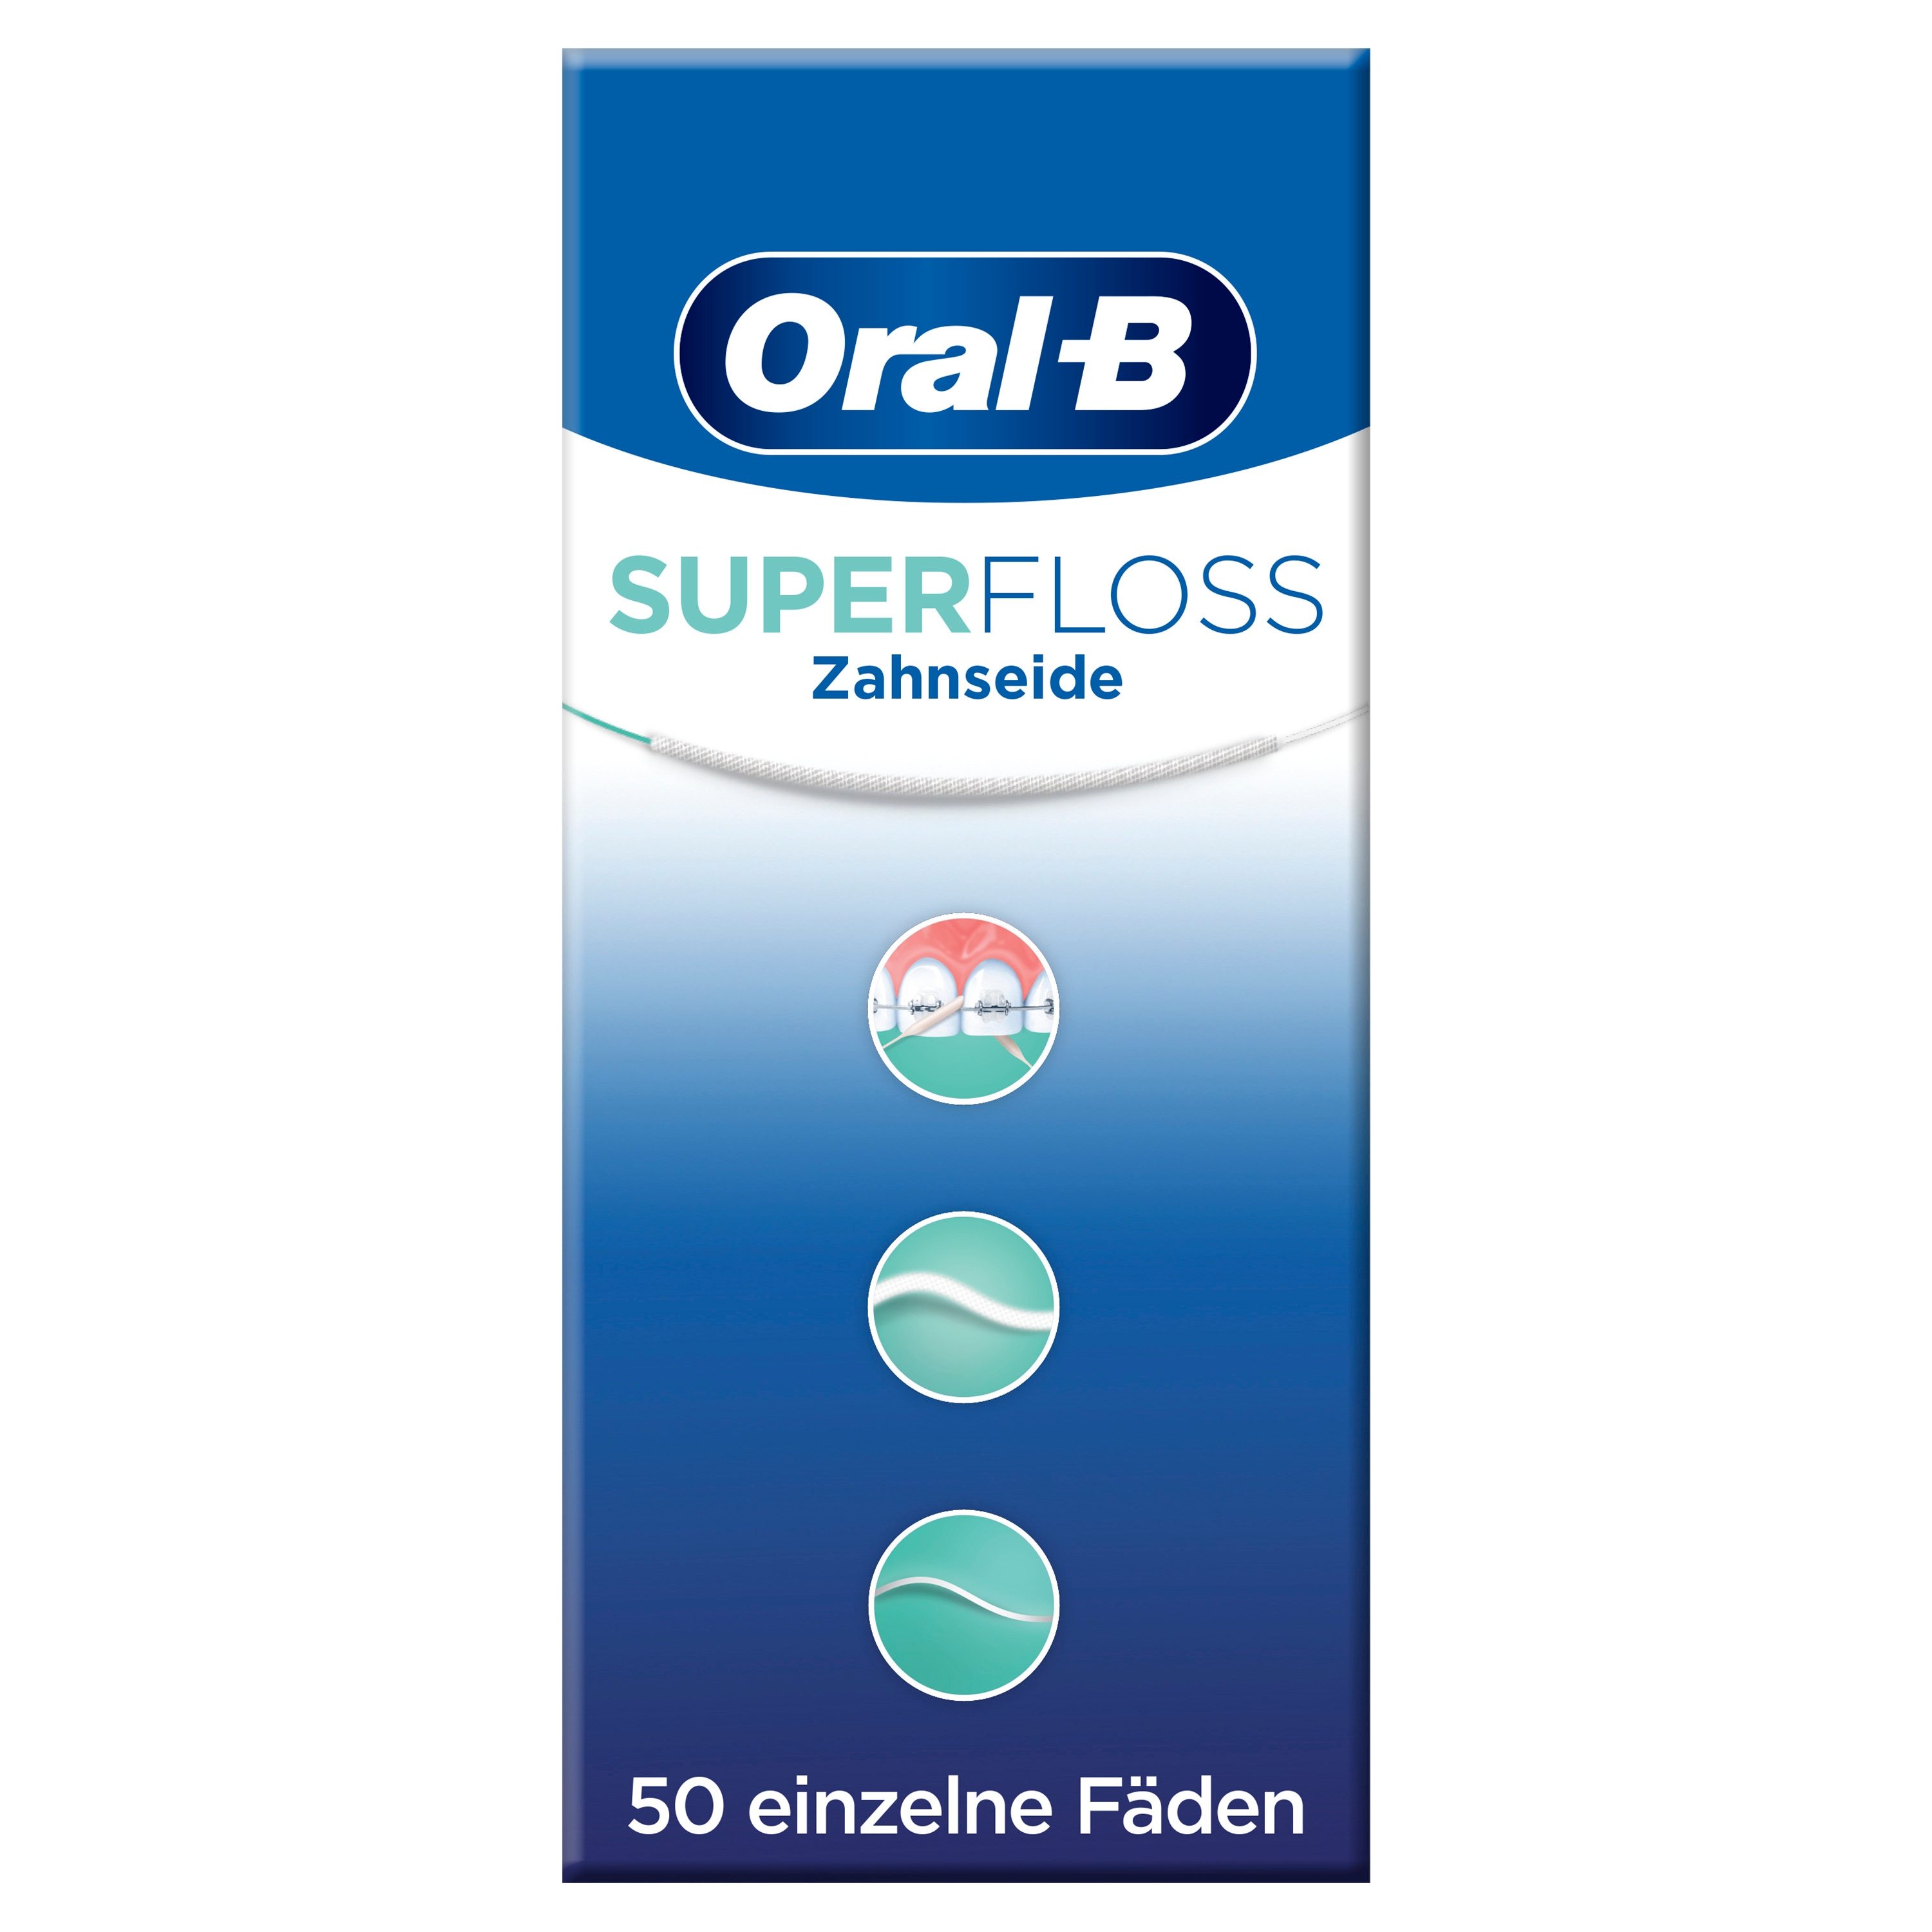 Produktbild von Oral B - Super Floss 50 Fäden